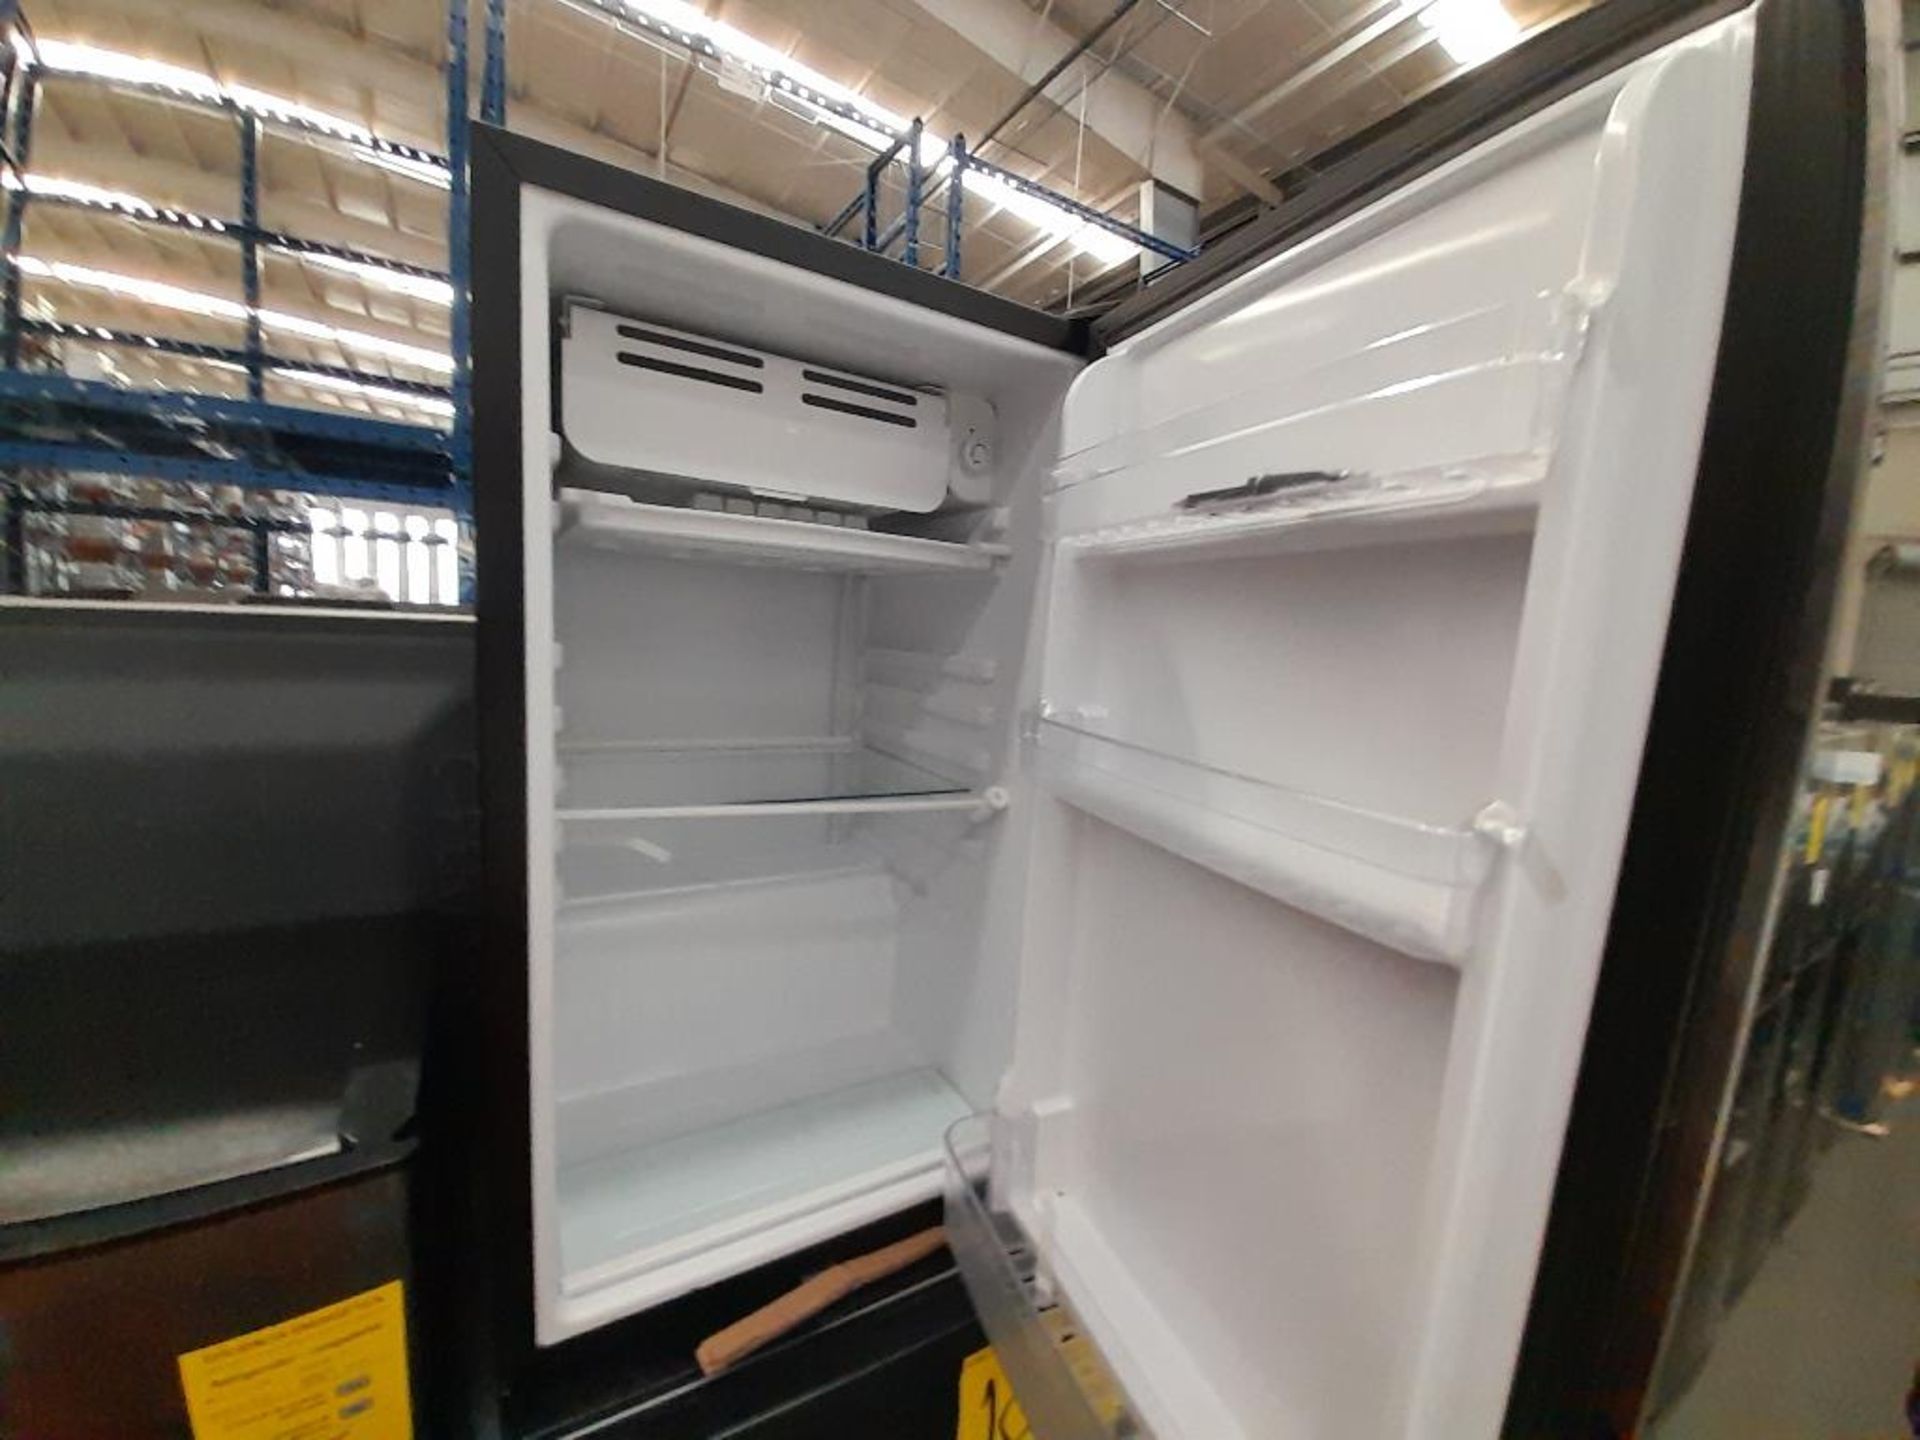 Lote de 3 refrigeradores Contiene: 1 Refrigerador Marca ATVIO, Modelo AT73TMS, Serie ND, Color GRIS - Image 6 of 9